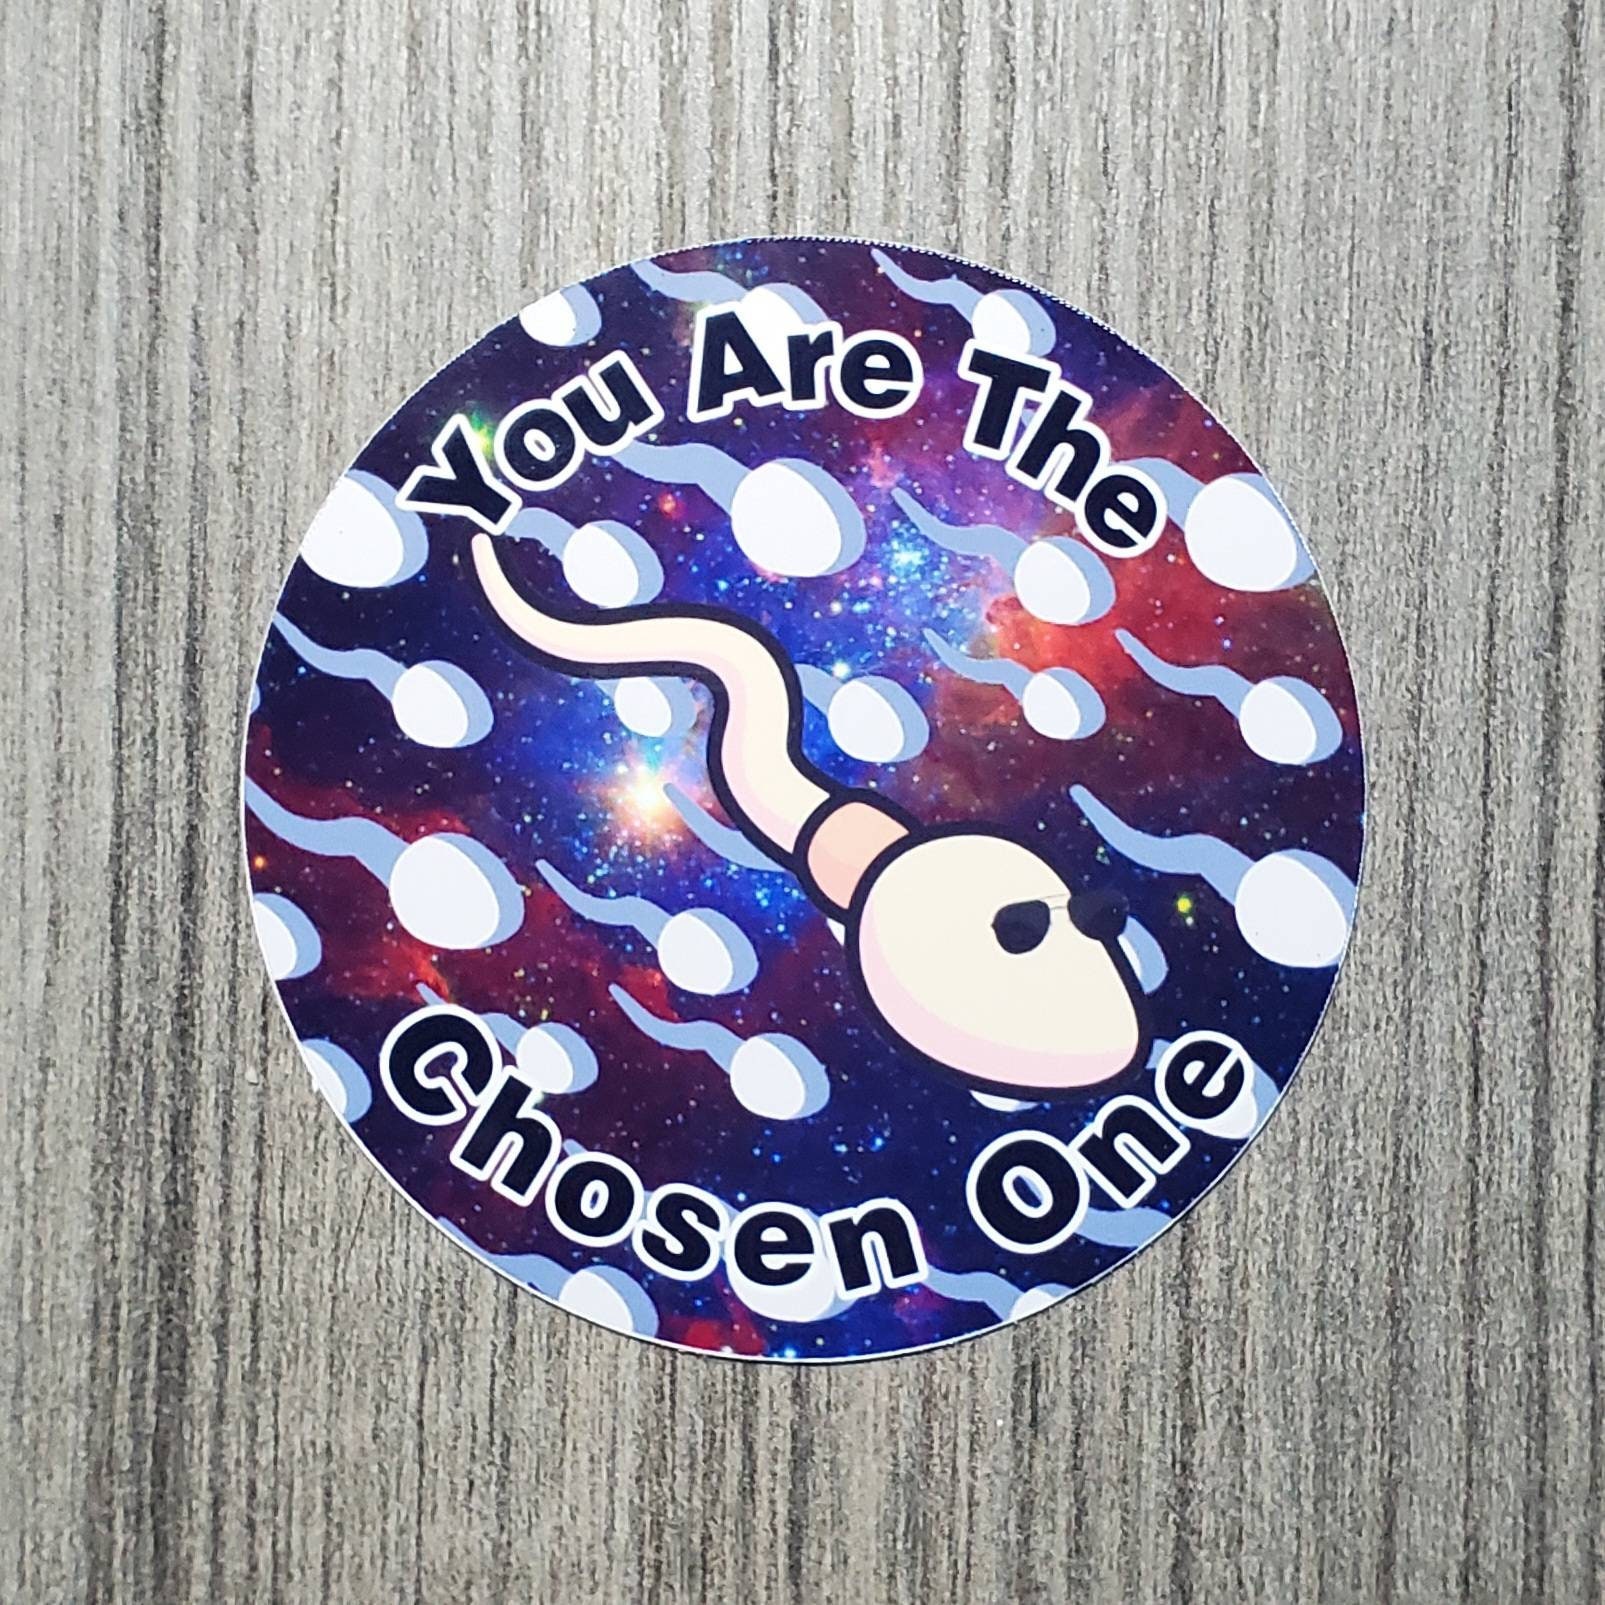 The Chosen One - The Chosen One - Sticker